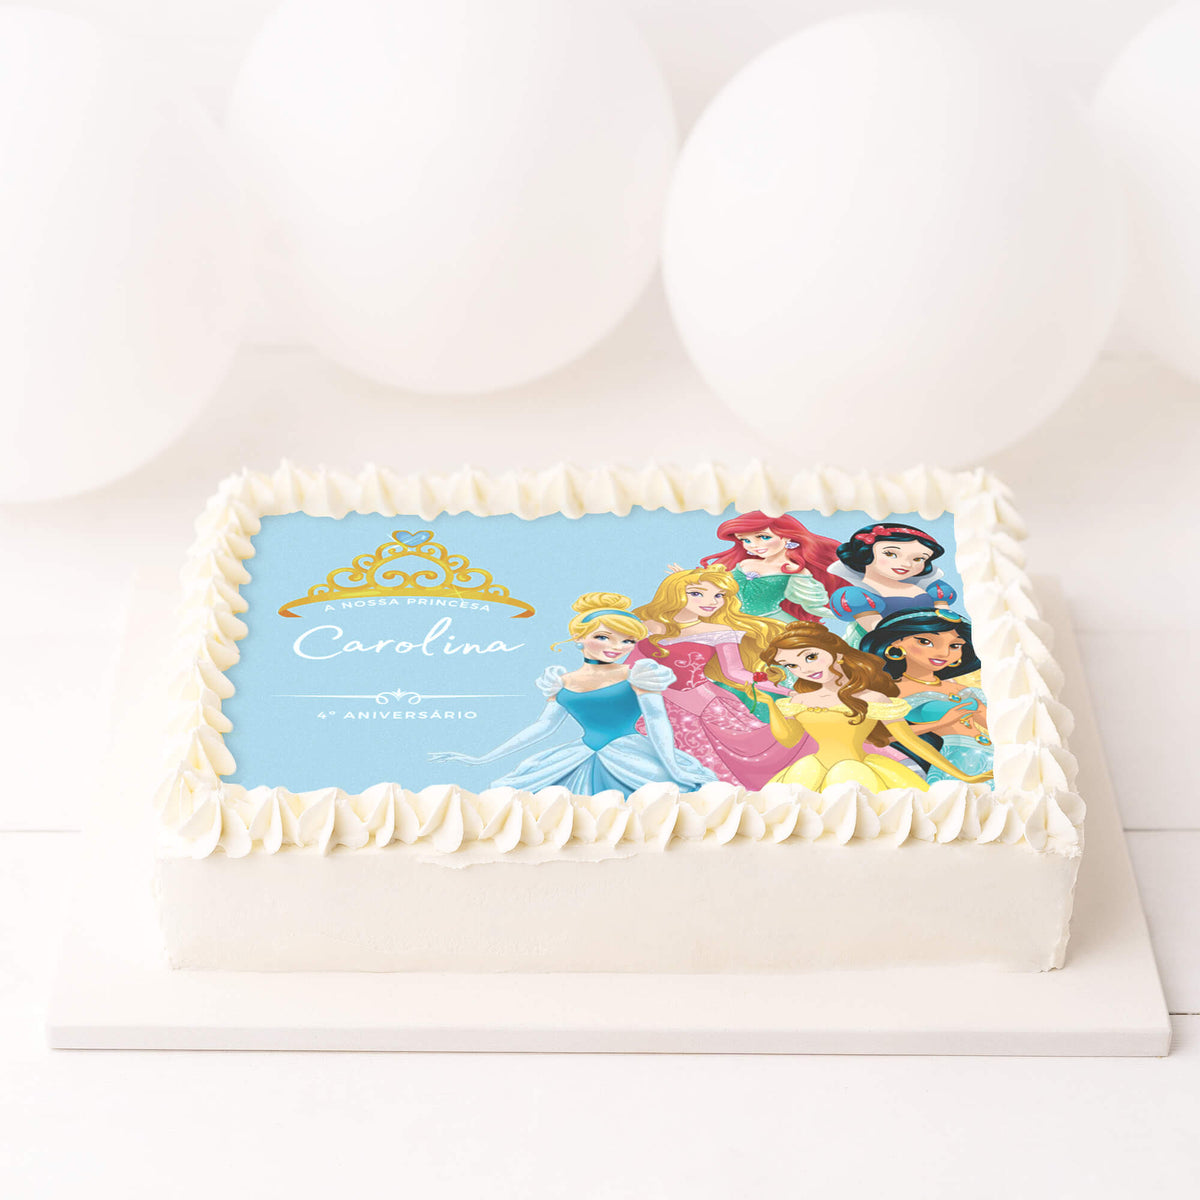 Topper de bolo princesas  Bolos de aniversário princesa disney